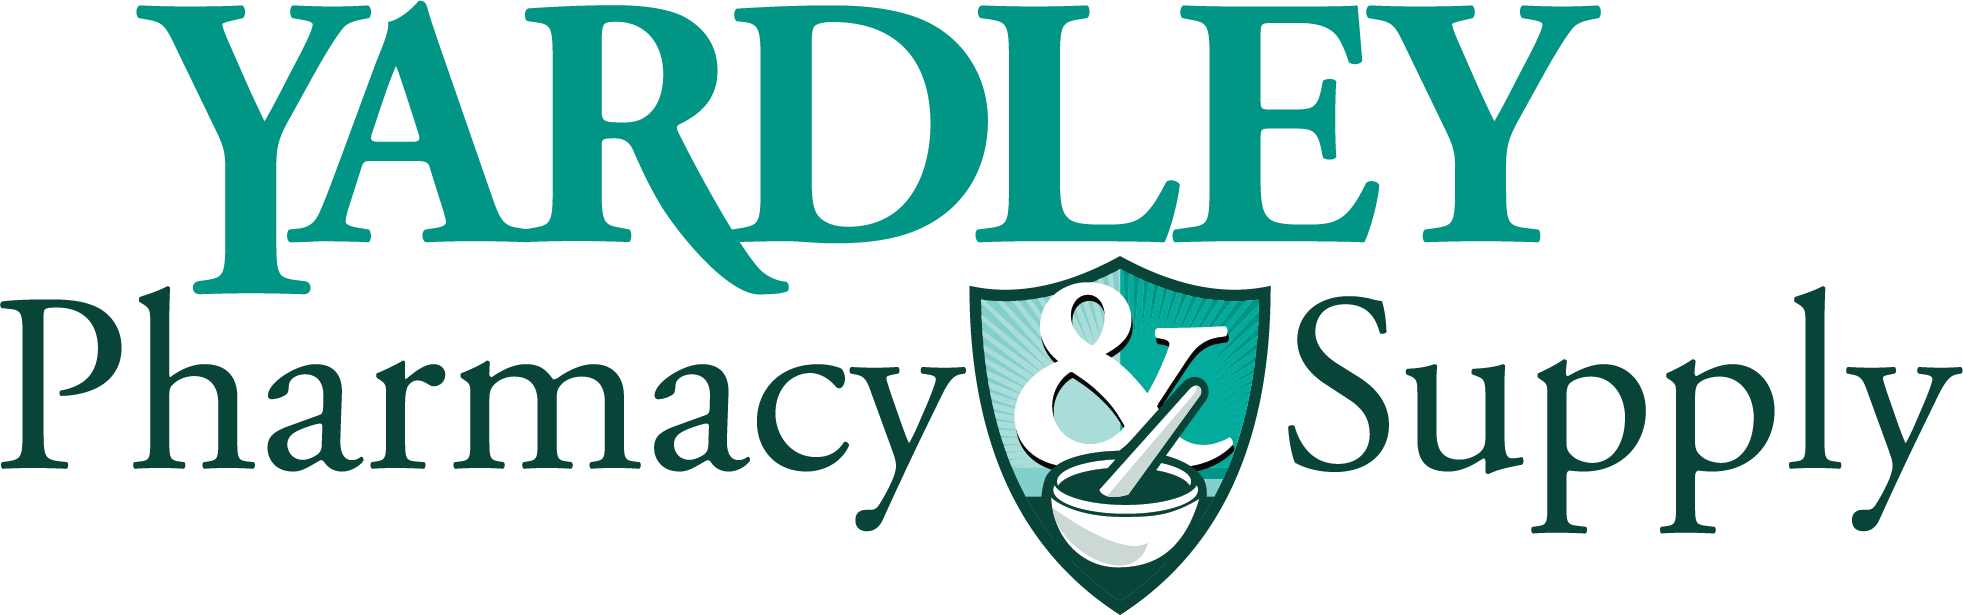 Yardley Pharmacy & Supply